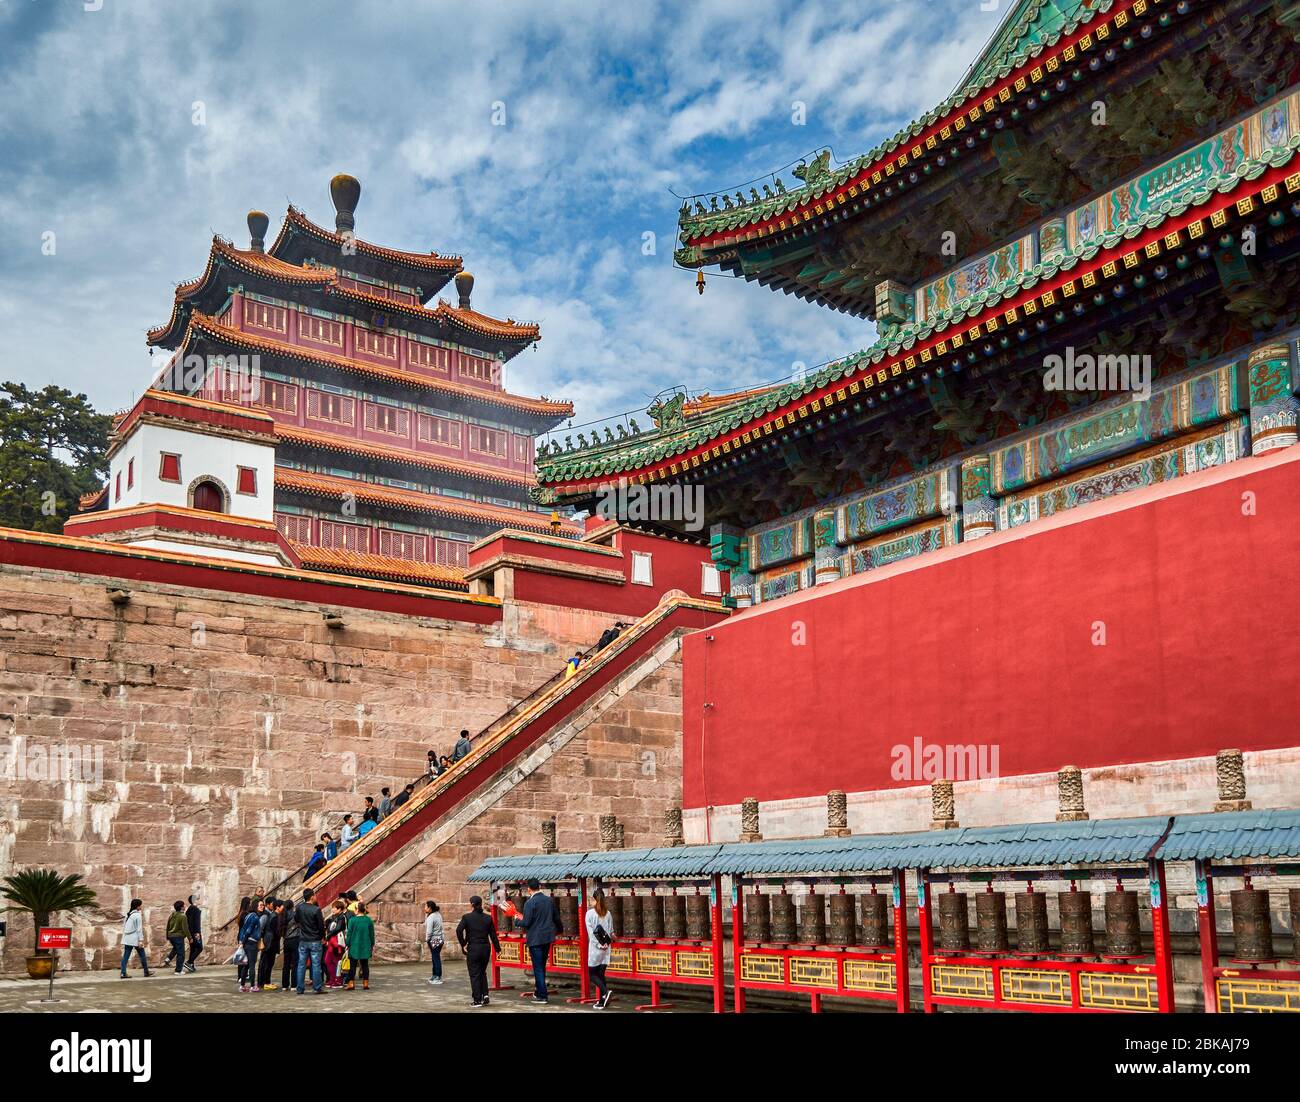 Chengde / Cina - 3 ottobre 2014: Tempio della Pace universale, Puning si, uno degli otto templi esterni di Chengde nel Chengde Mountain Resort, estate Foto Stock